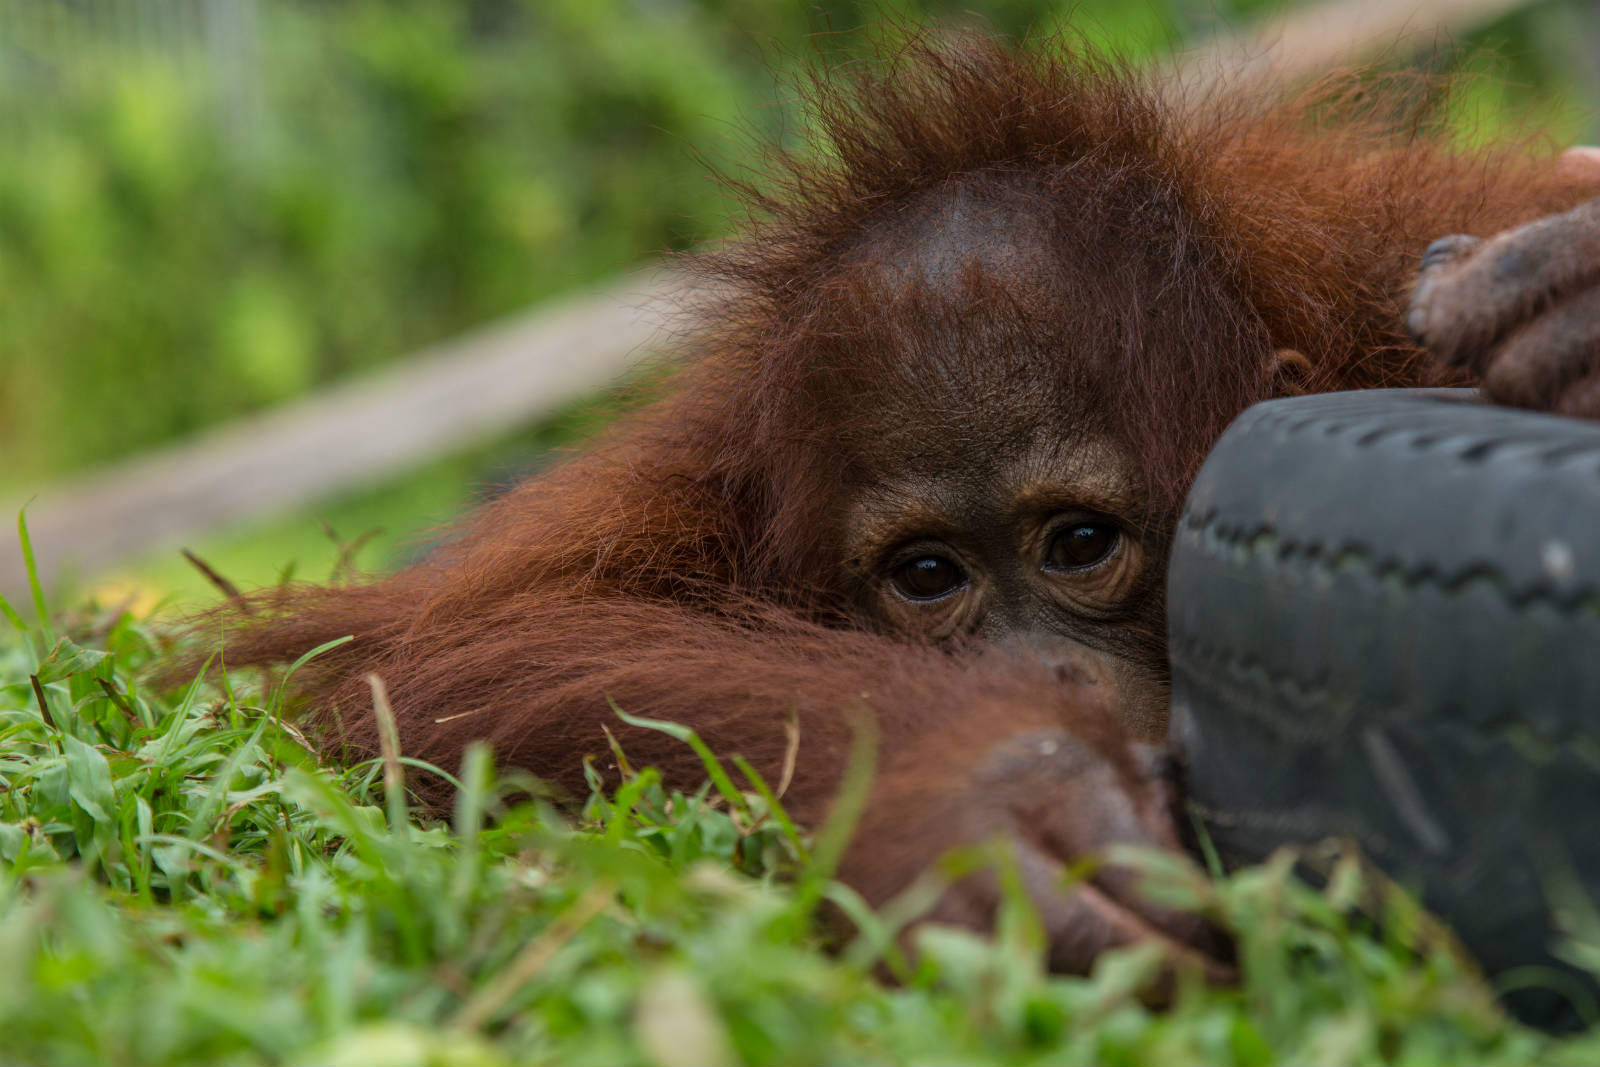 滙豐有能力推動整個行業以可持續的方式生產棕櫚油，保護珍貴的印尼雨林及極瀕危的紅毛猩猩。